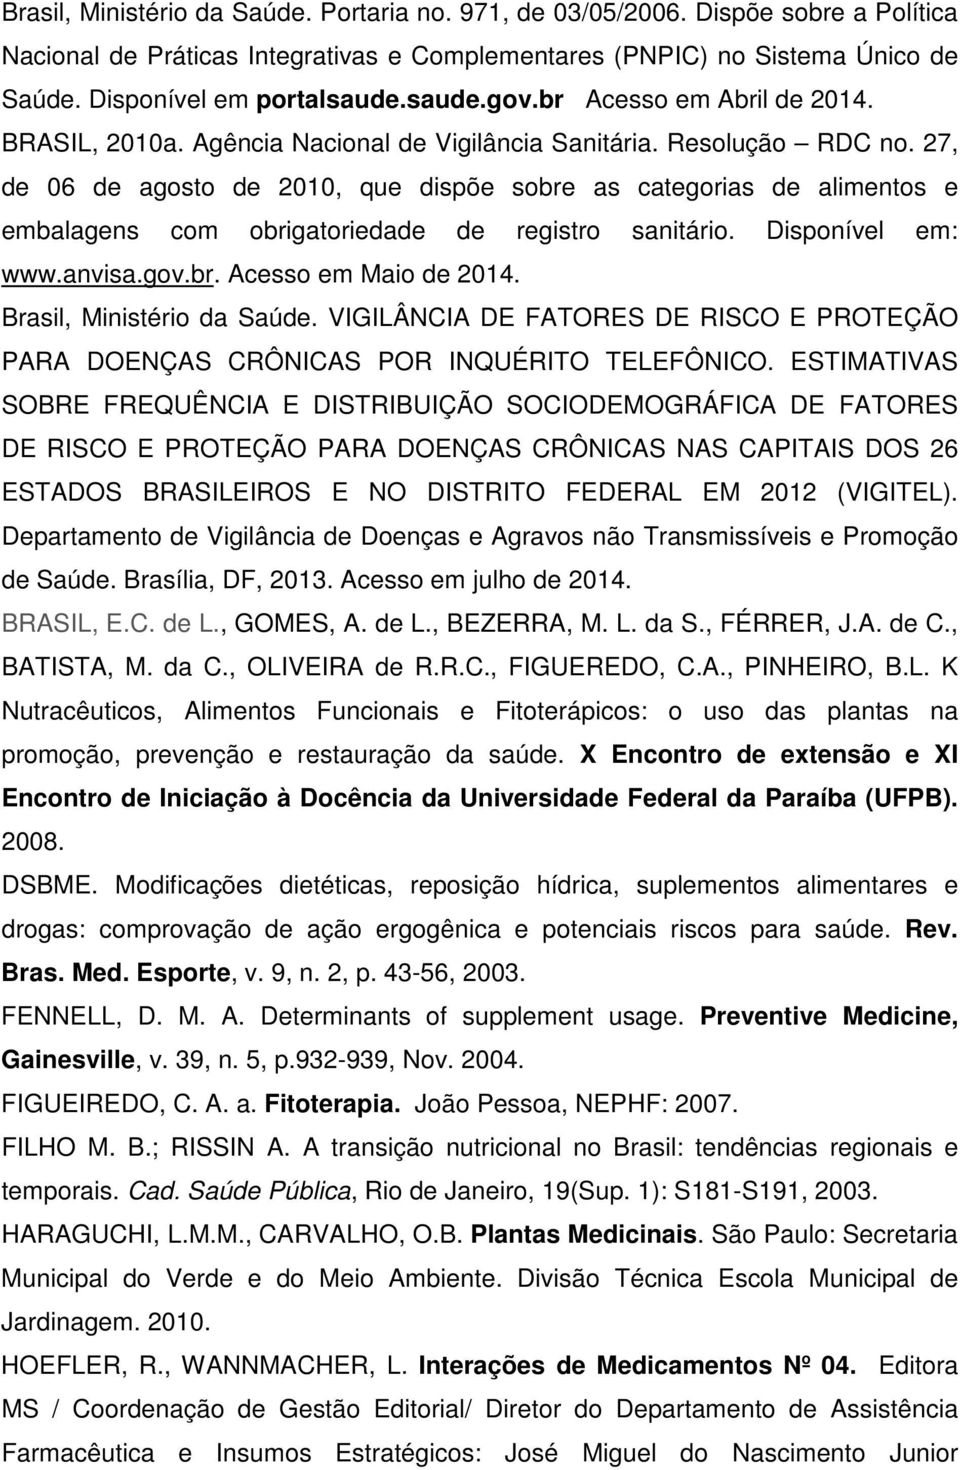 27, de 06 de agosto de 2010, que dispõe sobre as categorias de alimentos e embalagens com obrigatoriedade de registro sanitário. Disponível em: www.anvisa.gov.br. Acesso em Maio de 2014.